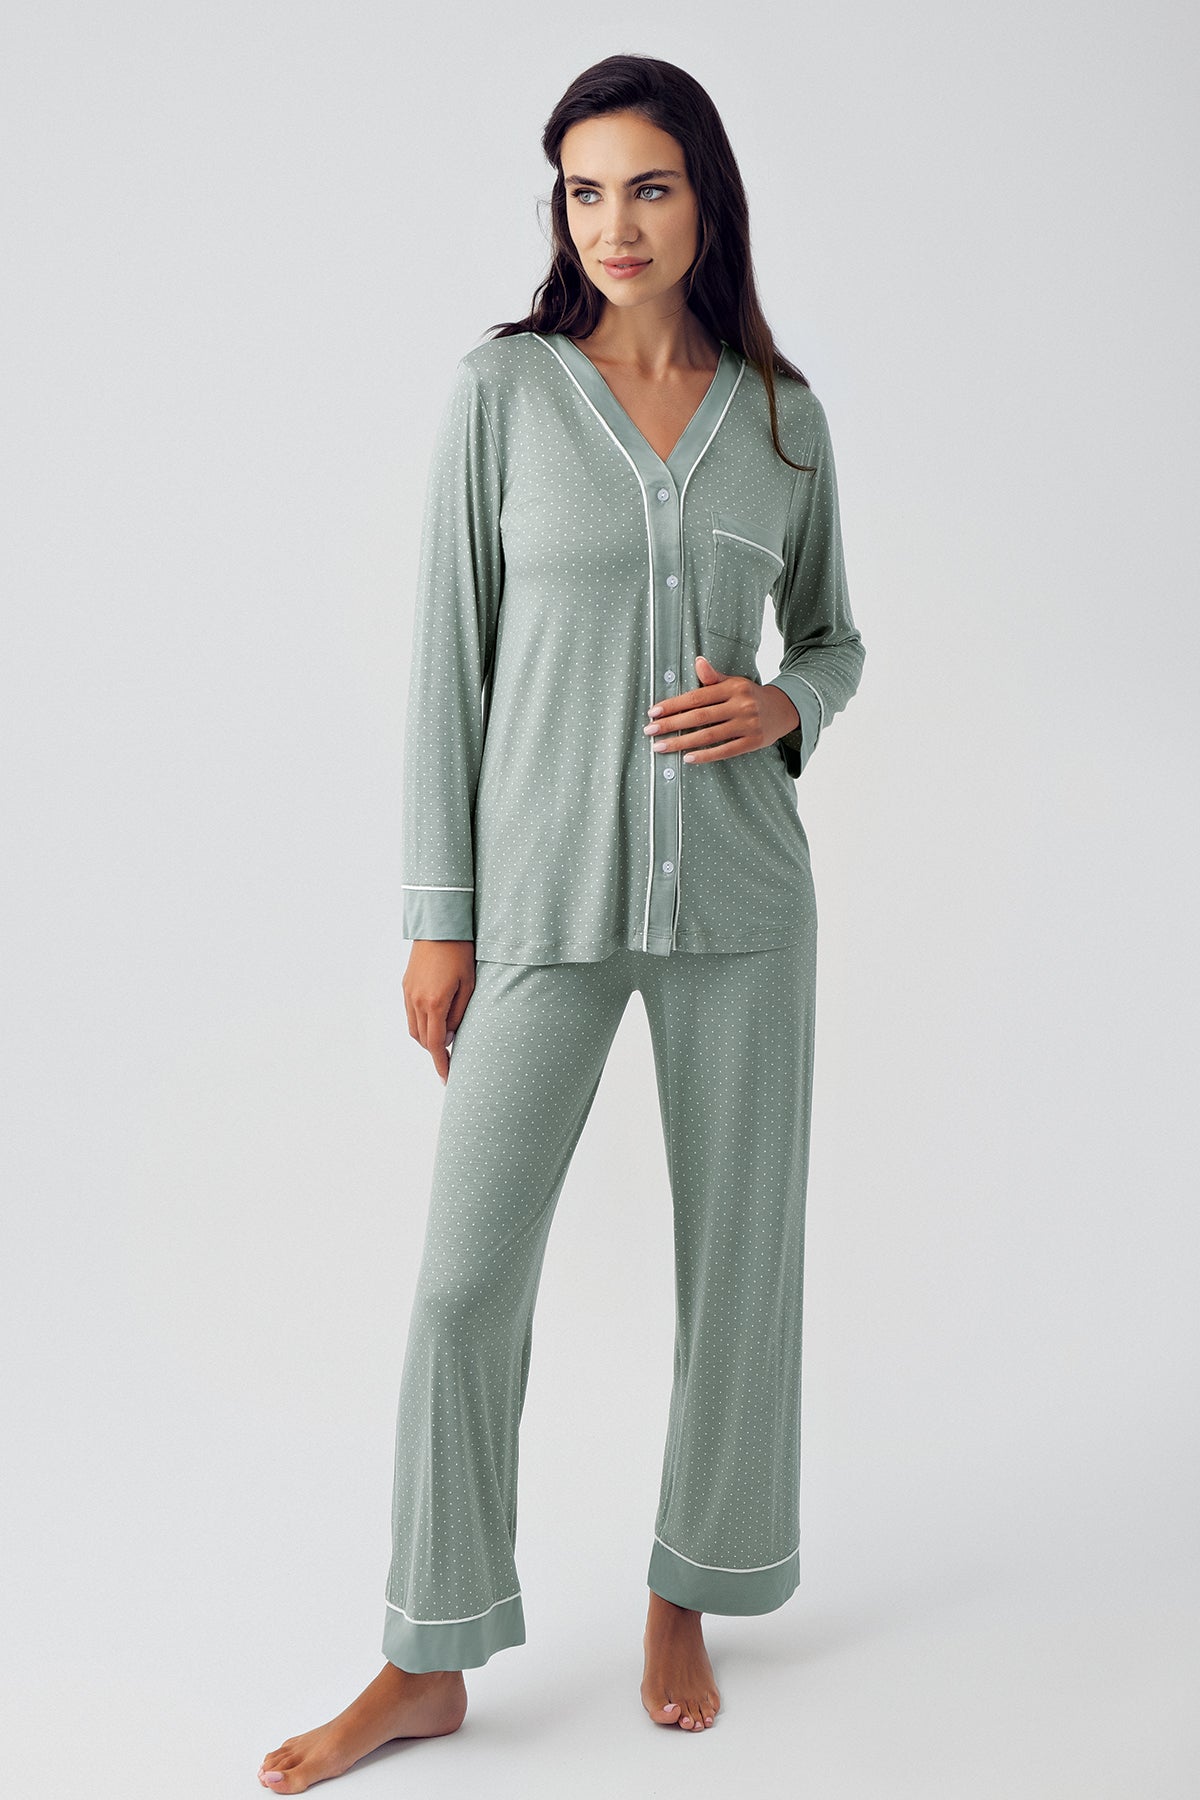 Shopymommy 15201 Polka Dot Maternity & Nursing Pajamas Green